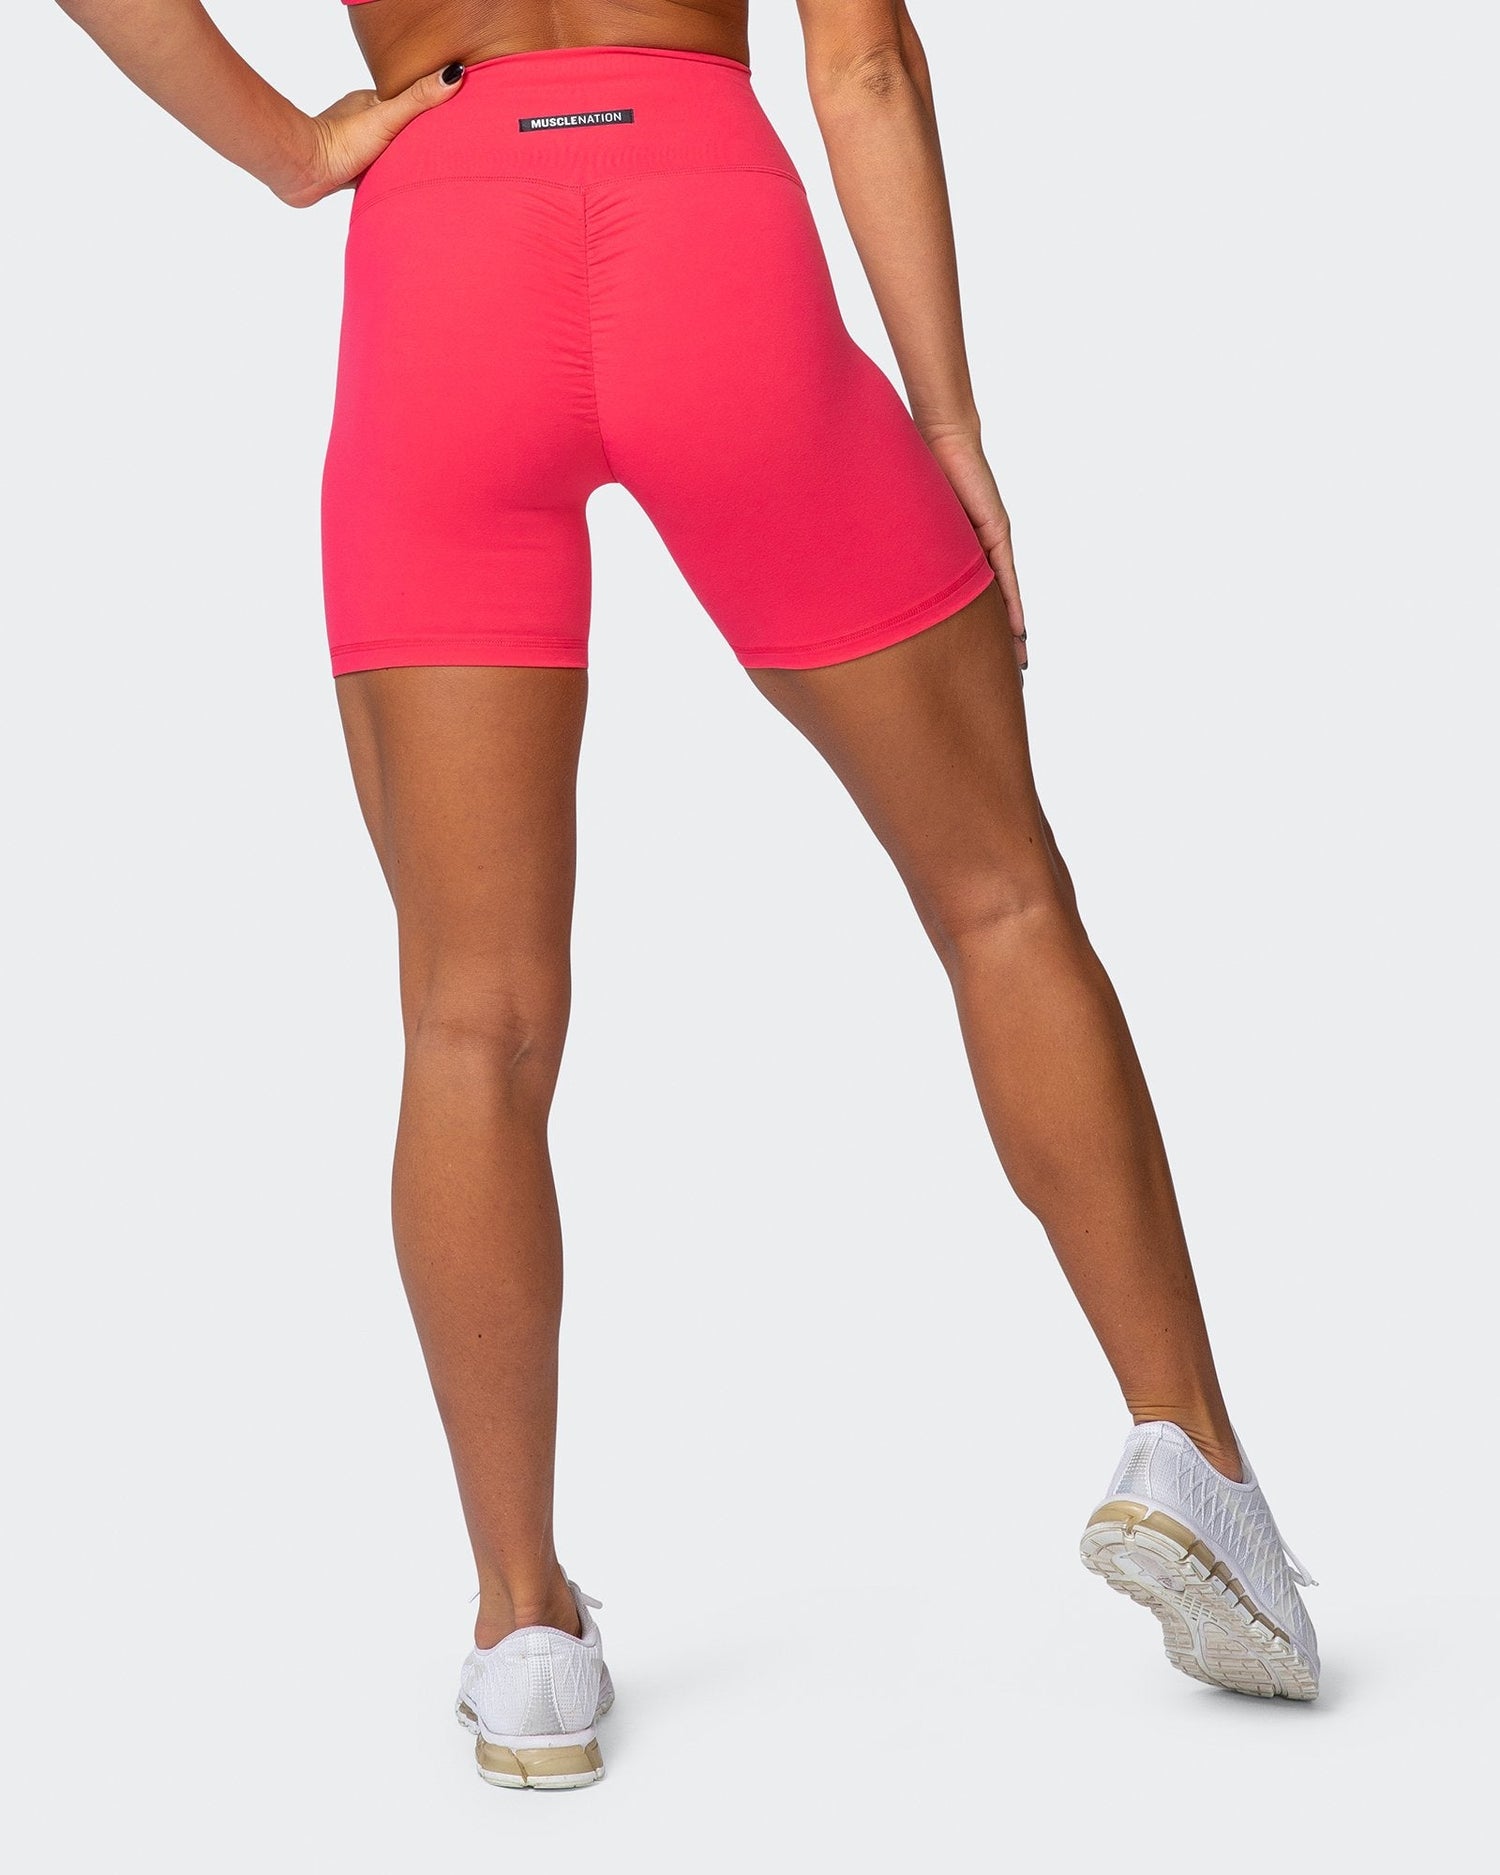 Gymshark, Shorts, 8 Gymshark Hot Pink Bike Shorts